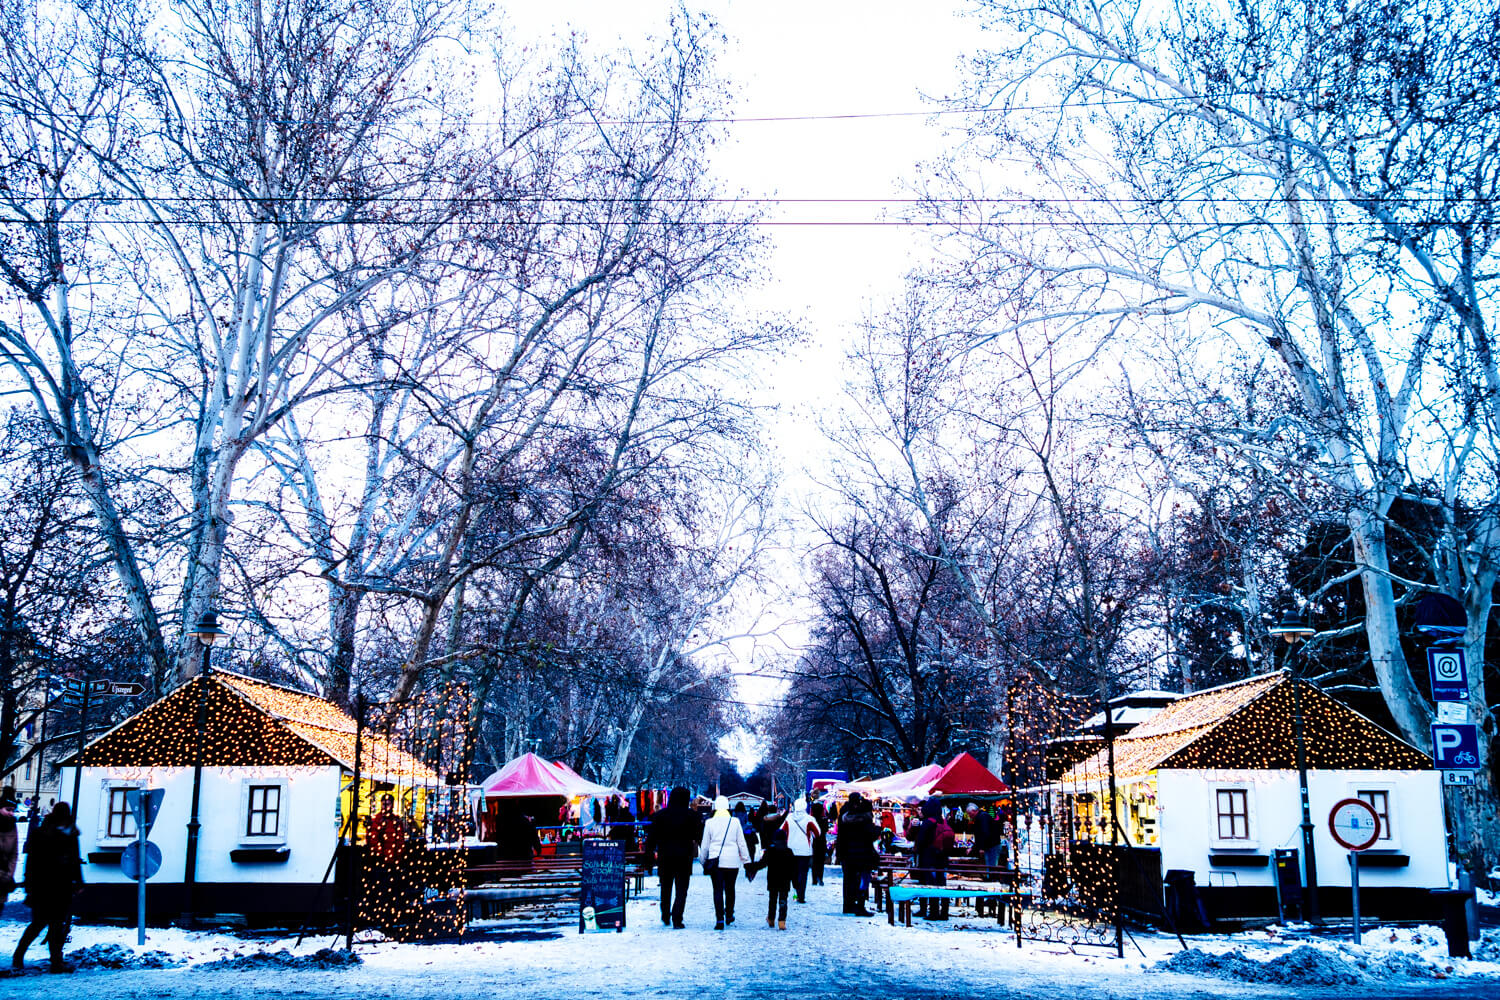 Szeged Christmas Market